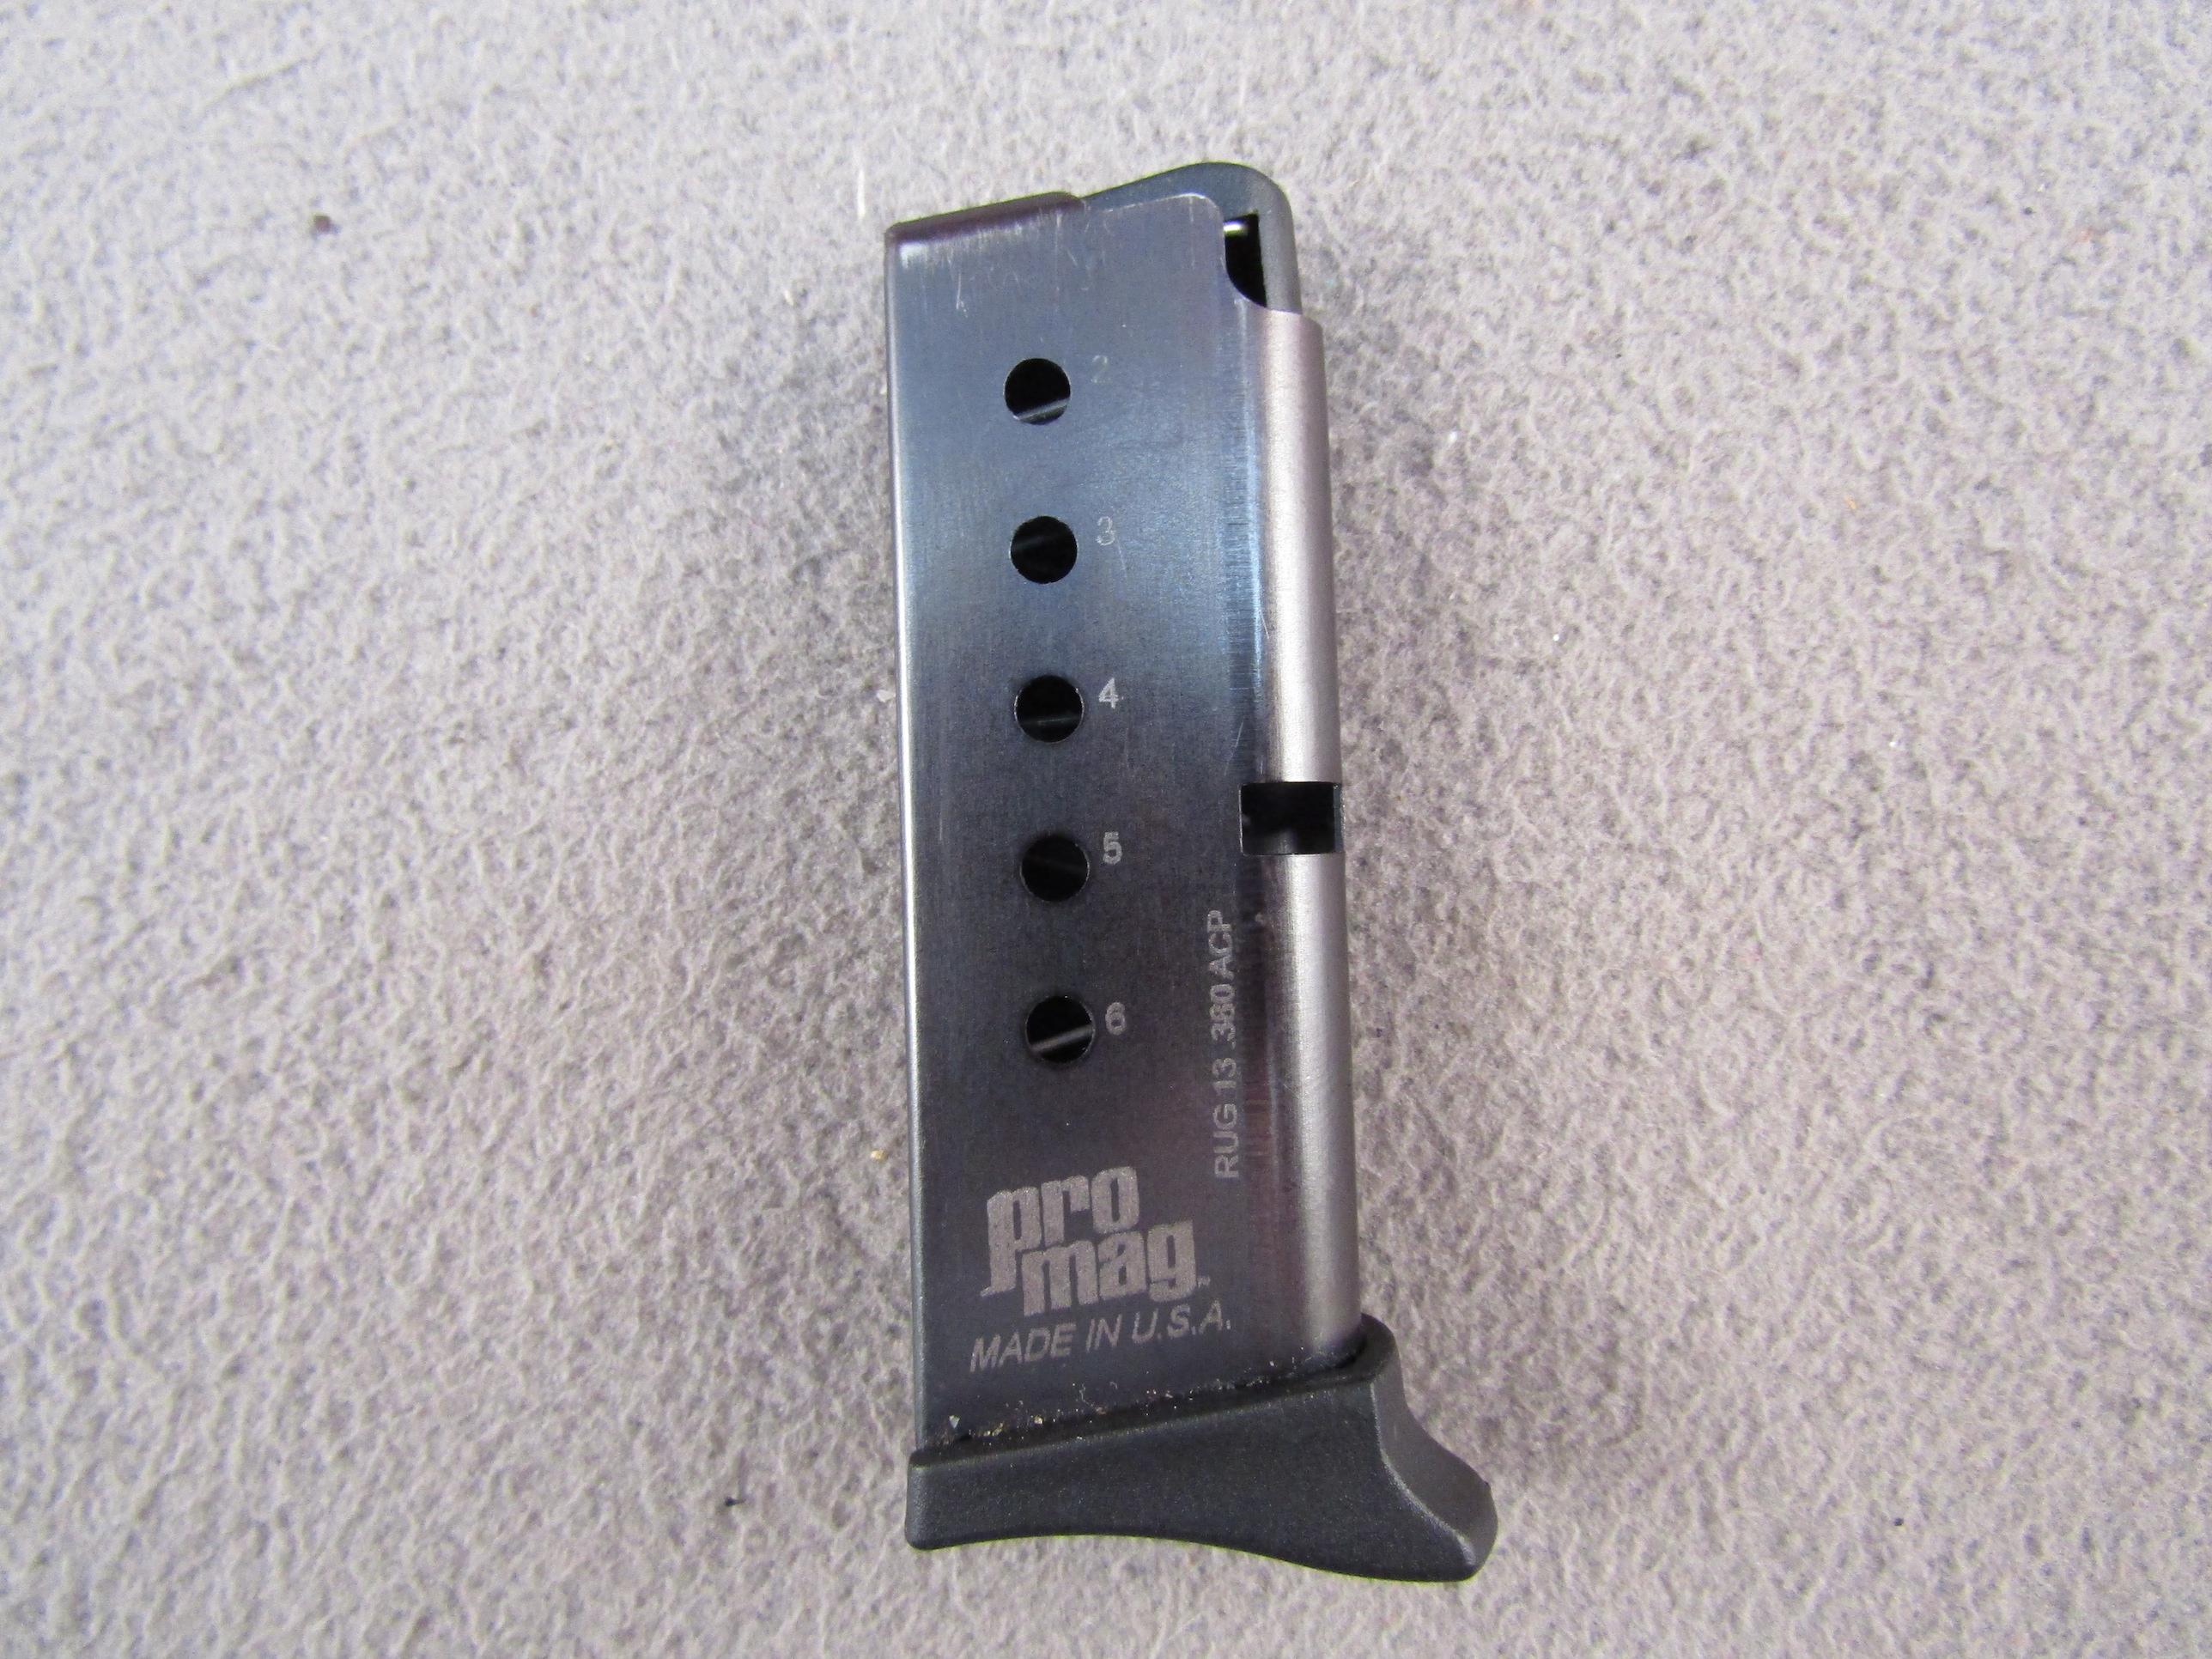 handgun: RUGER Model LCP, Semi-Auto Pistol, .380, 6 shot, 2.5" barrel, S#376-12546